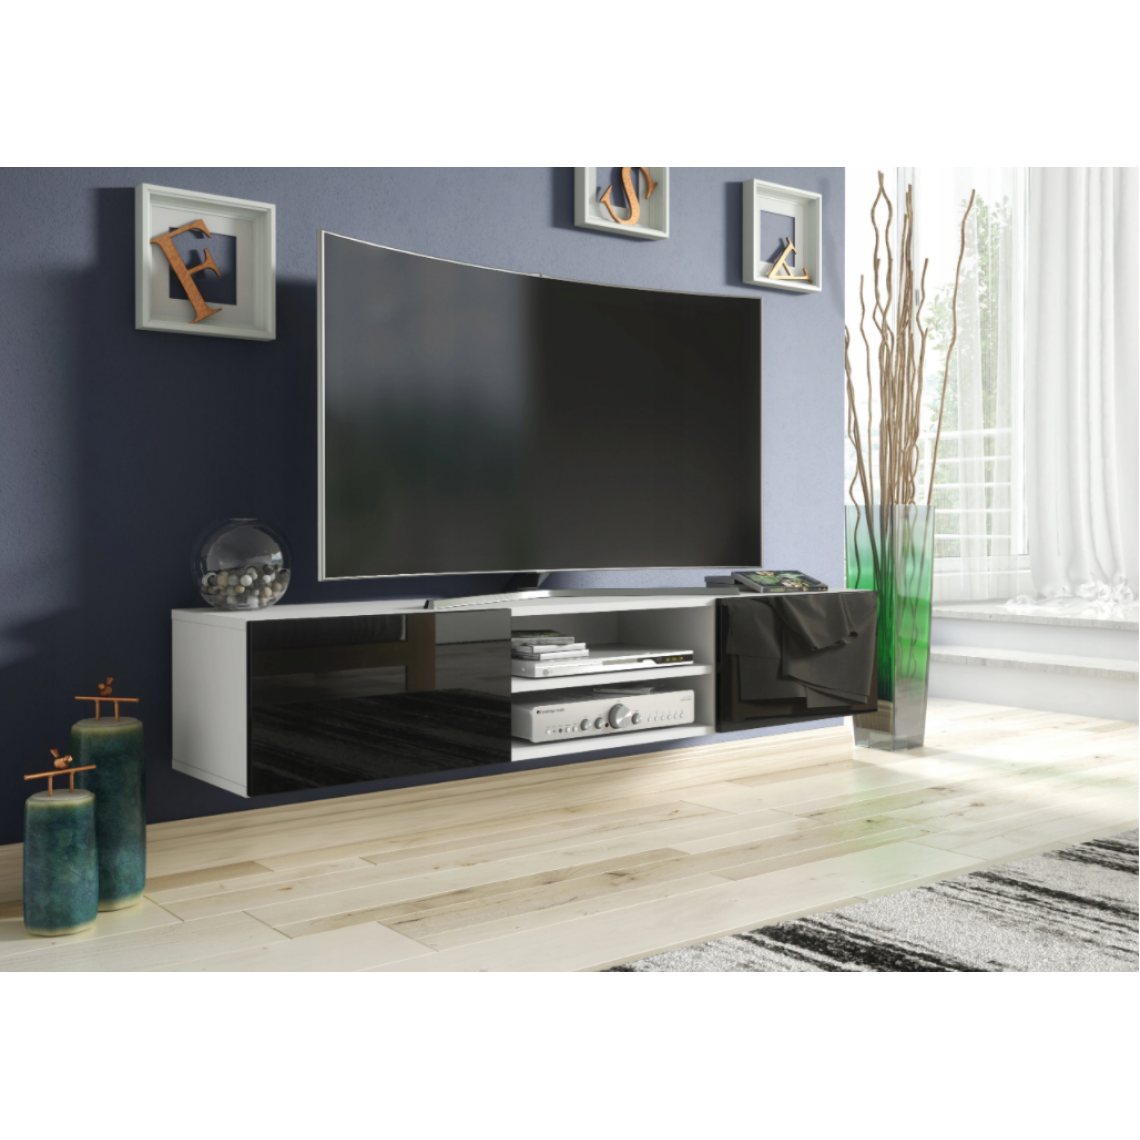 3xeliving - 3xEliving Meuble TV avec rangement Demi 2 15 120 cm Blanc / Noir Brillant, Largeur: 120cm, Profondeur: 35cm, Hauteur: 30 cm. - Meubles TV, Hi-Fi